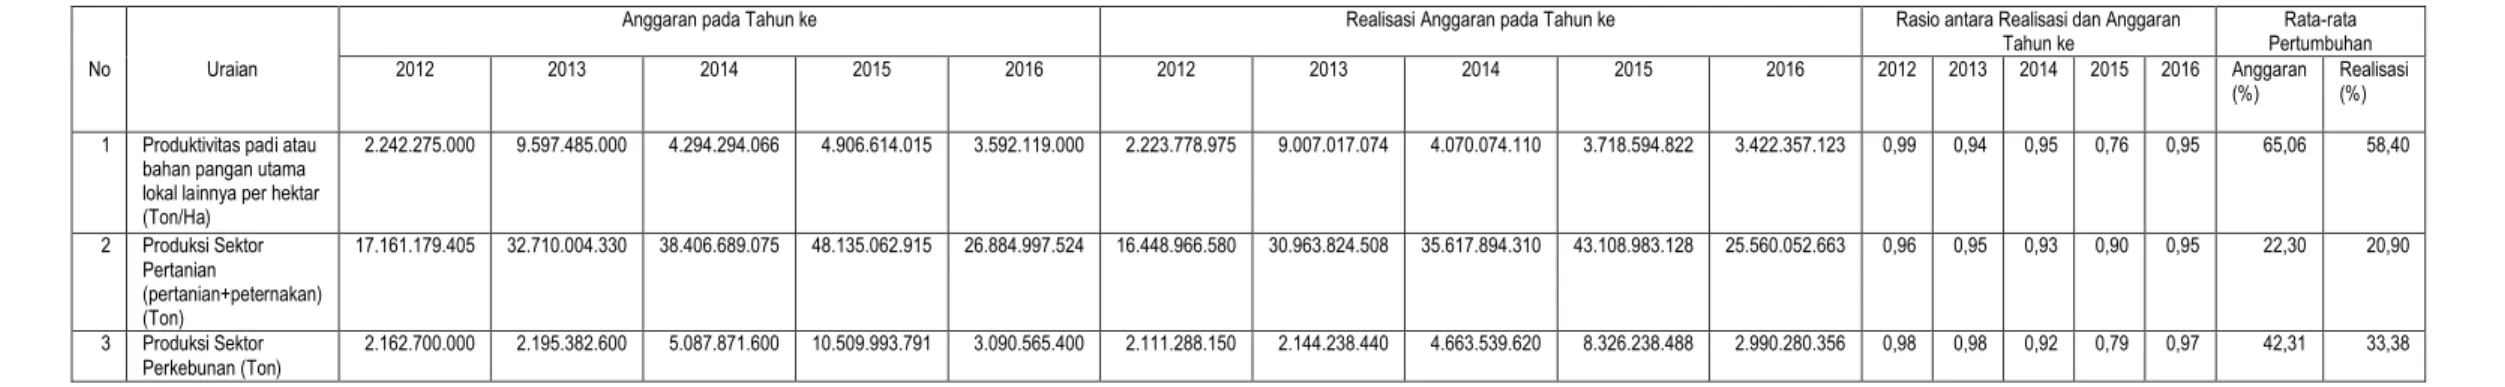 Tabel 2-4. (Tabel T-C.24) Anggaran dan Realisasi Pendanaan Pelayanan Perangkat Daerah Dinas Pertanian  Kabupaten Bandung 